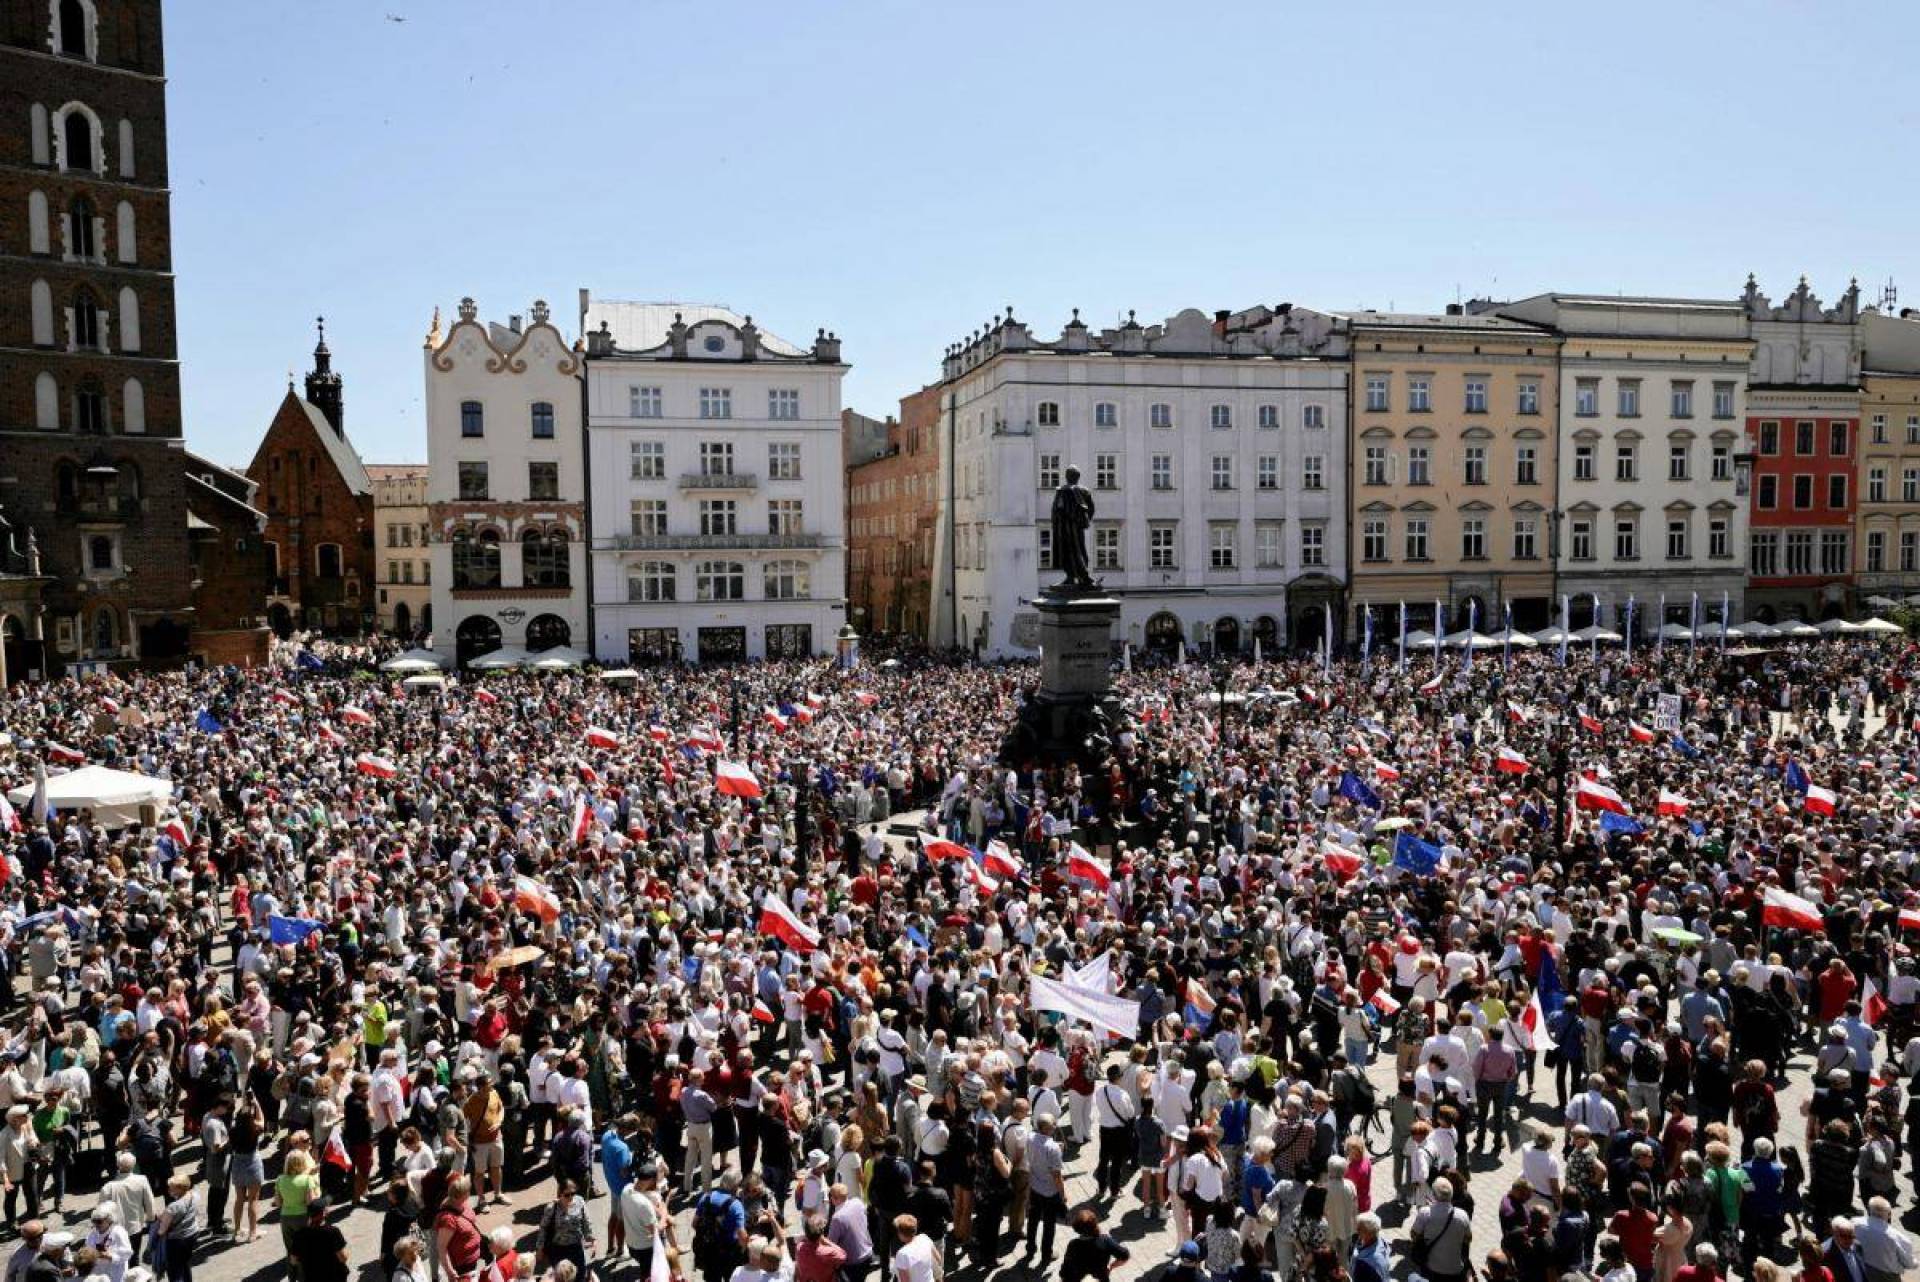 W Krakowie kilkanaście tysięcy osób wspierało wielki marsz opozycji